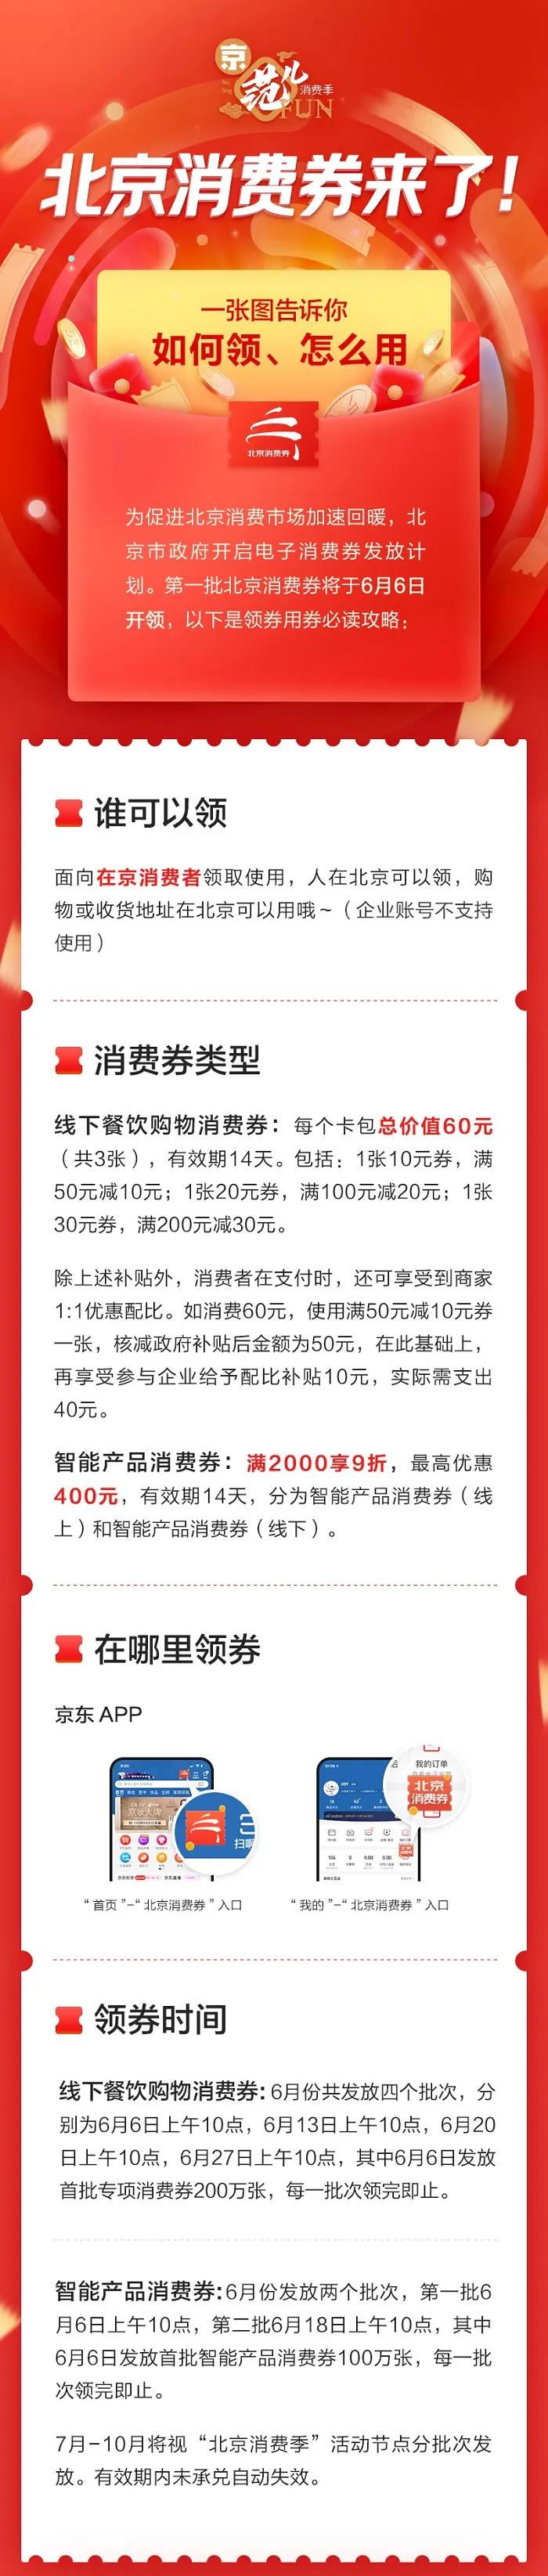 促消费助经济 北京消费季6月6日启动 122亿元消费券将发放(图2)